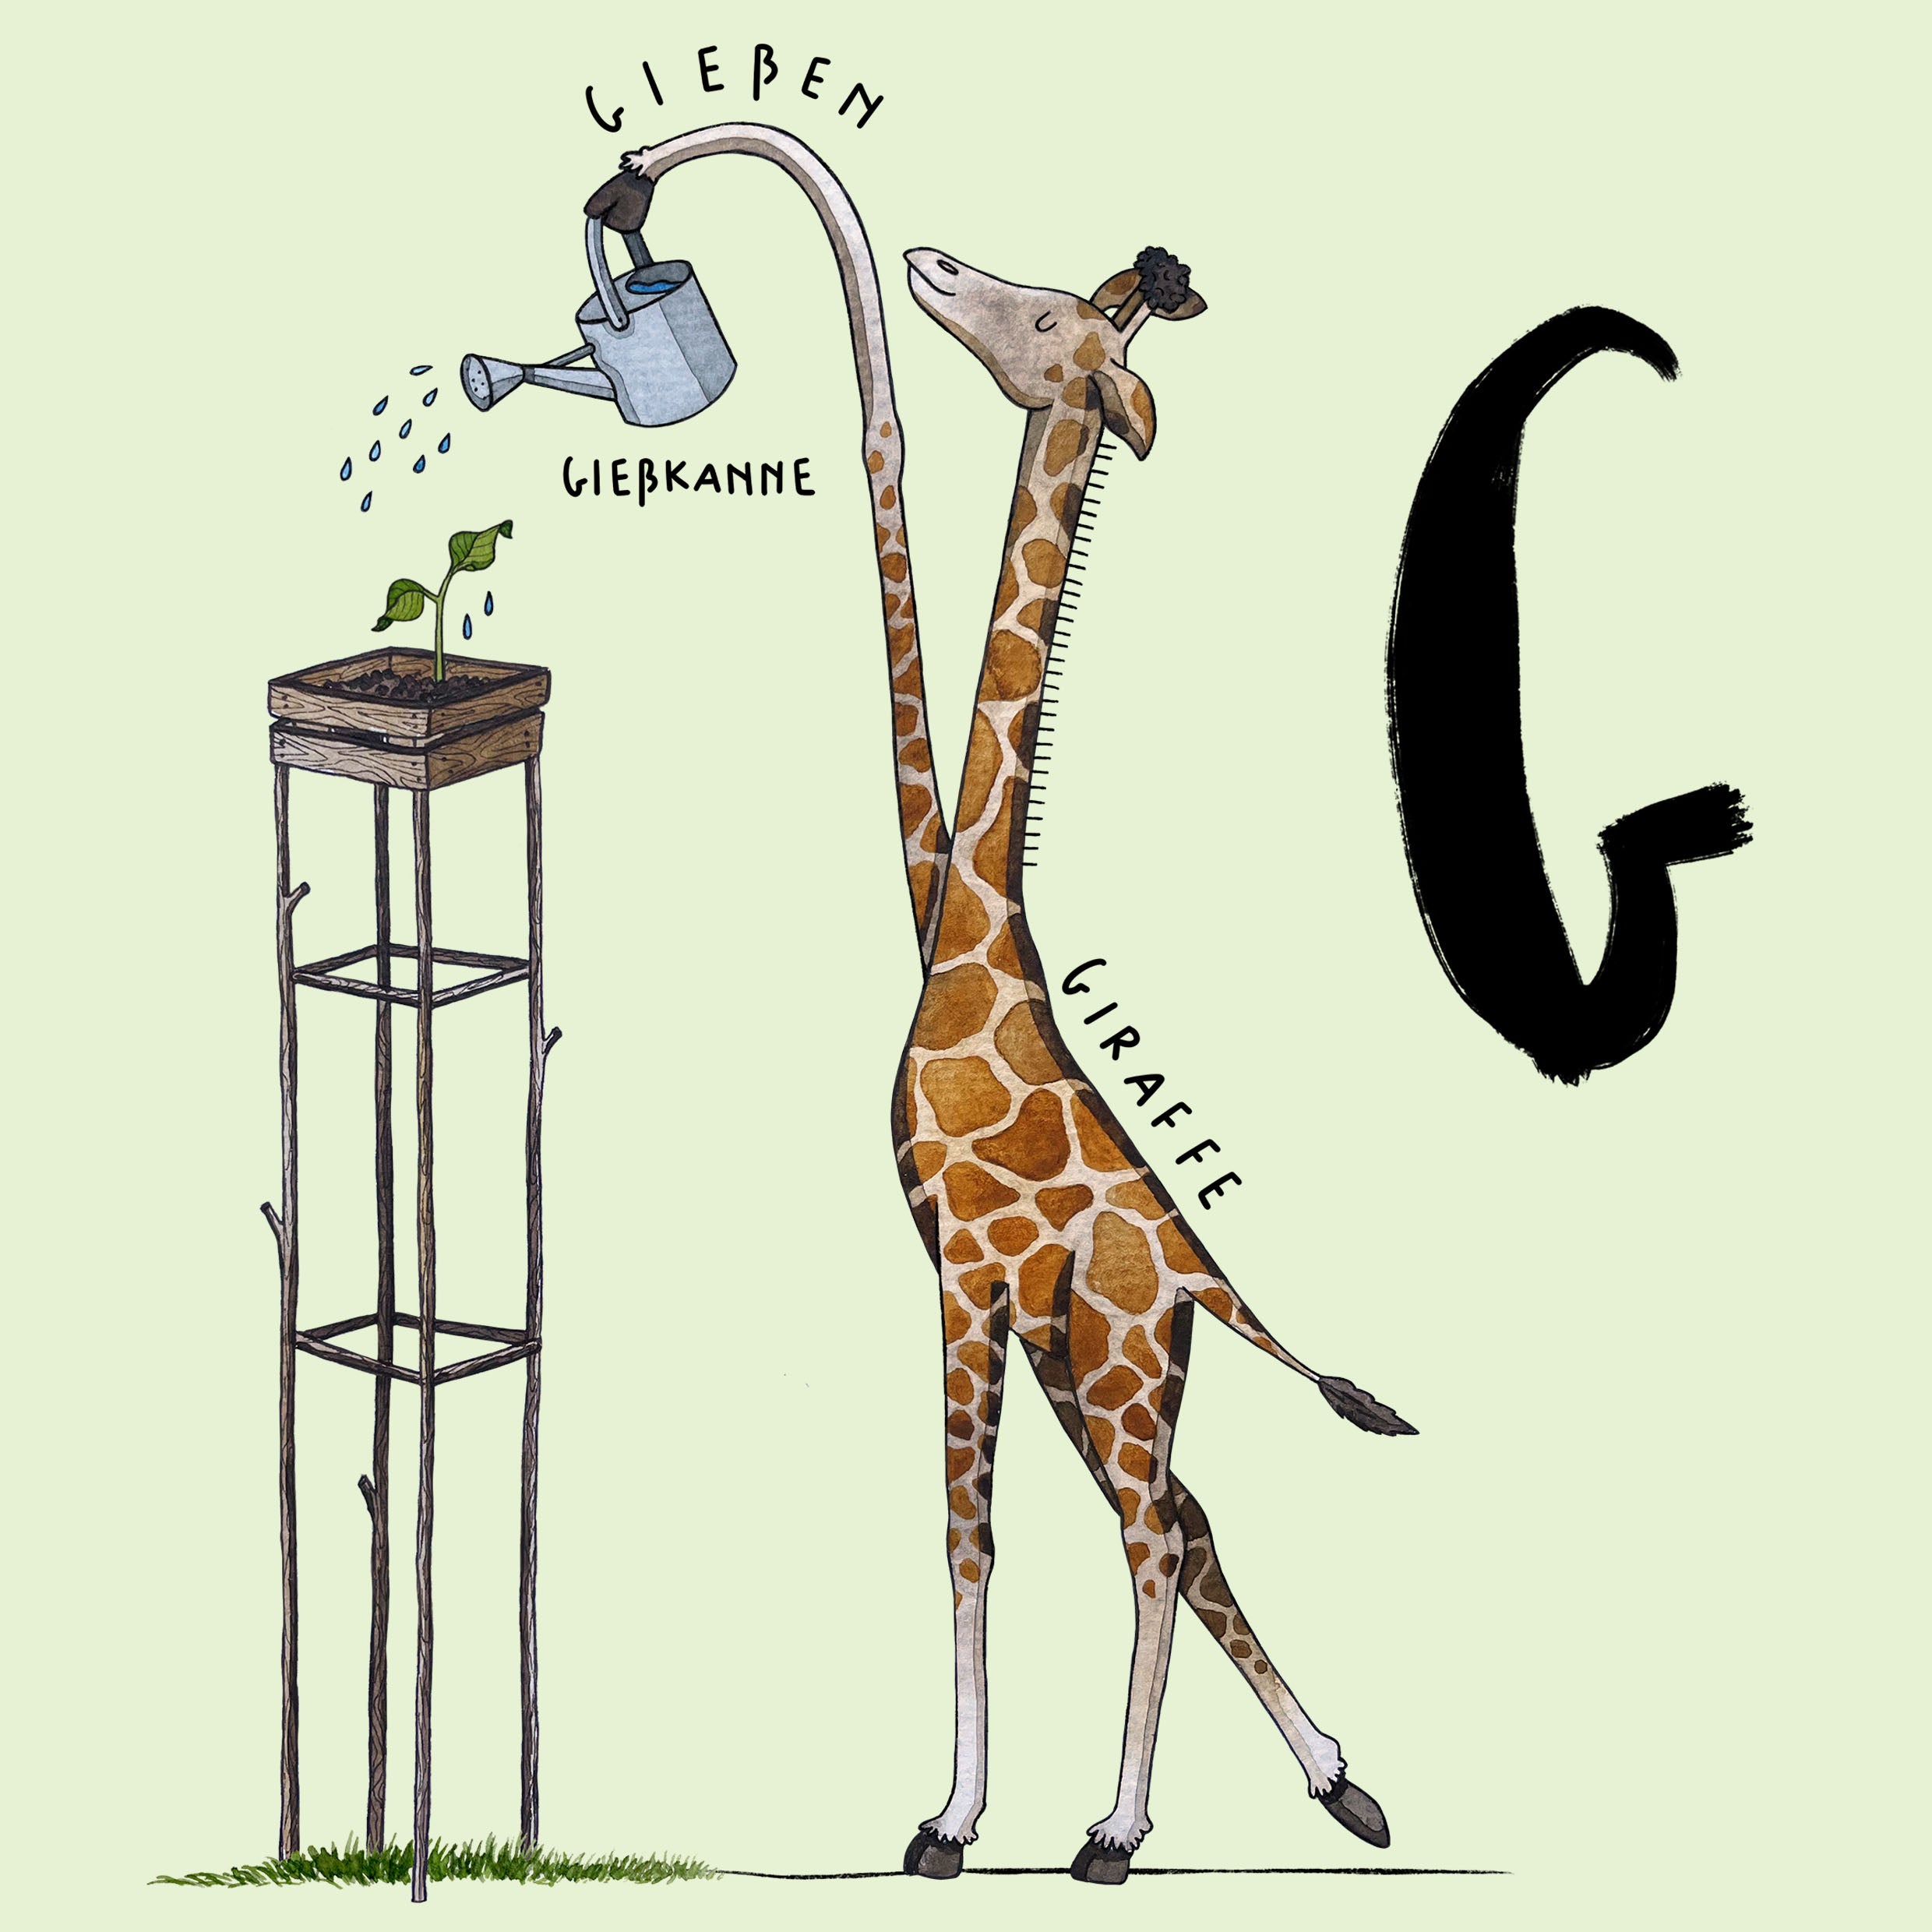 Der Buchstabe G. Eine Giraffe gießt mit einer Gießkannne eine Pflanze.